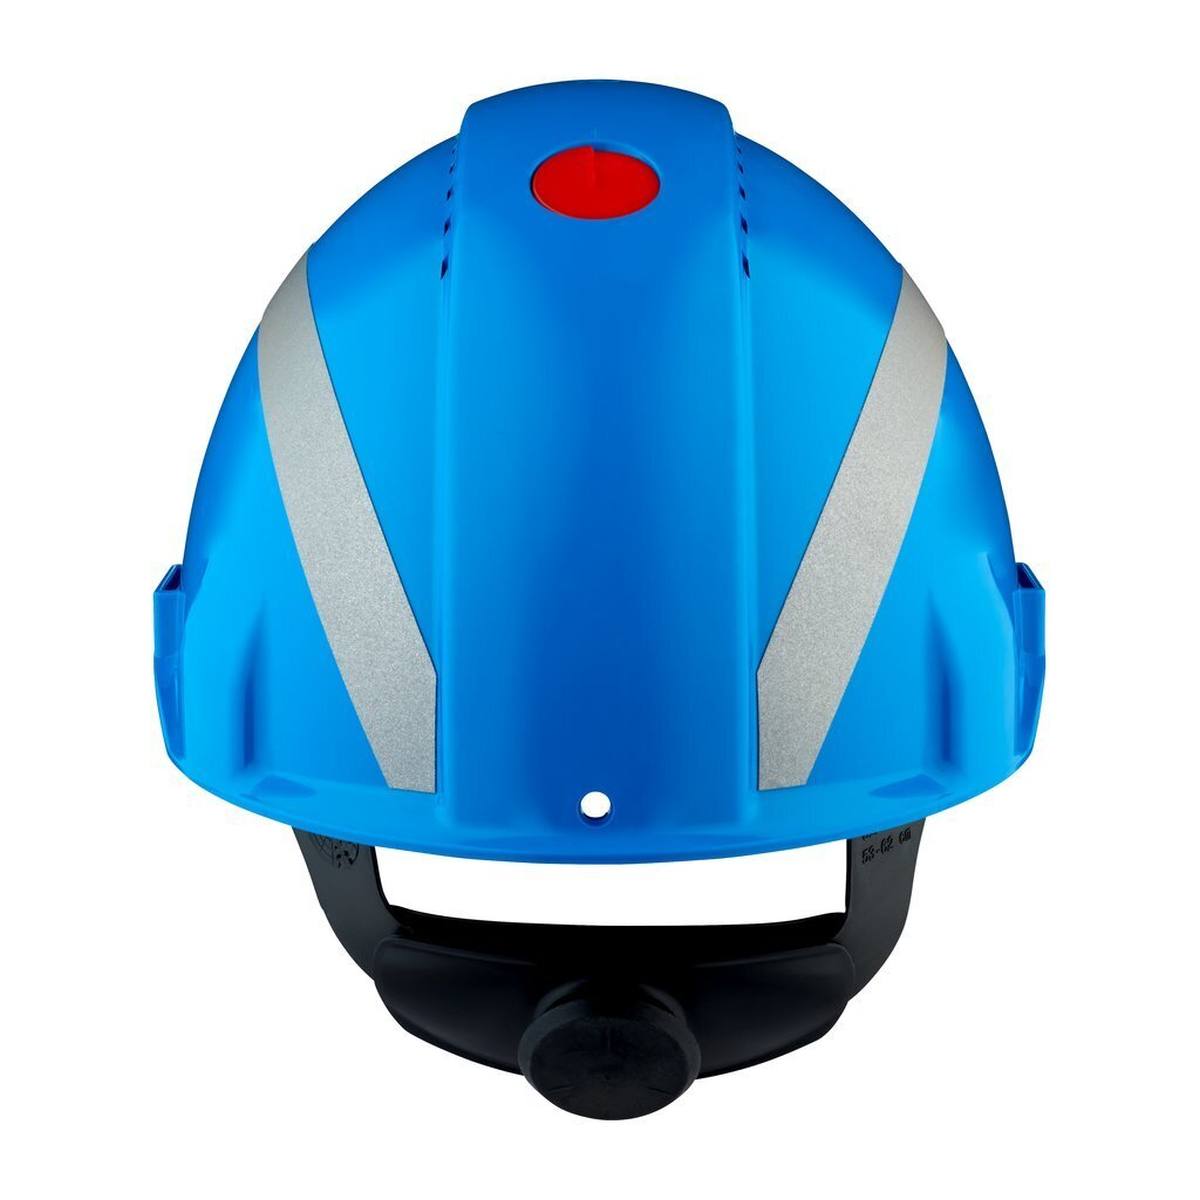 elmetto di sicurezza 3M G3000 con indicatore UV, blu, ABS, chiusura a cricchetto ventilata, fascia antisudore in plastica, adesivo riflettente